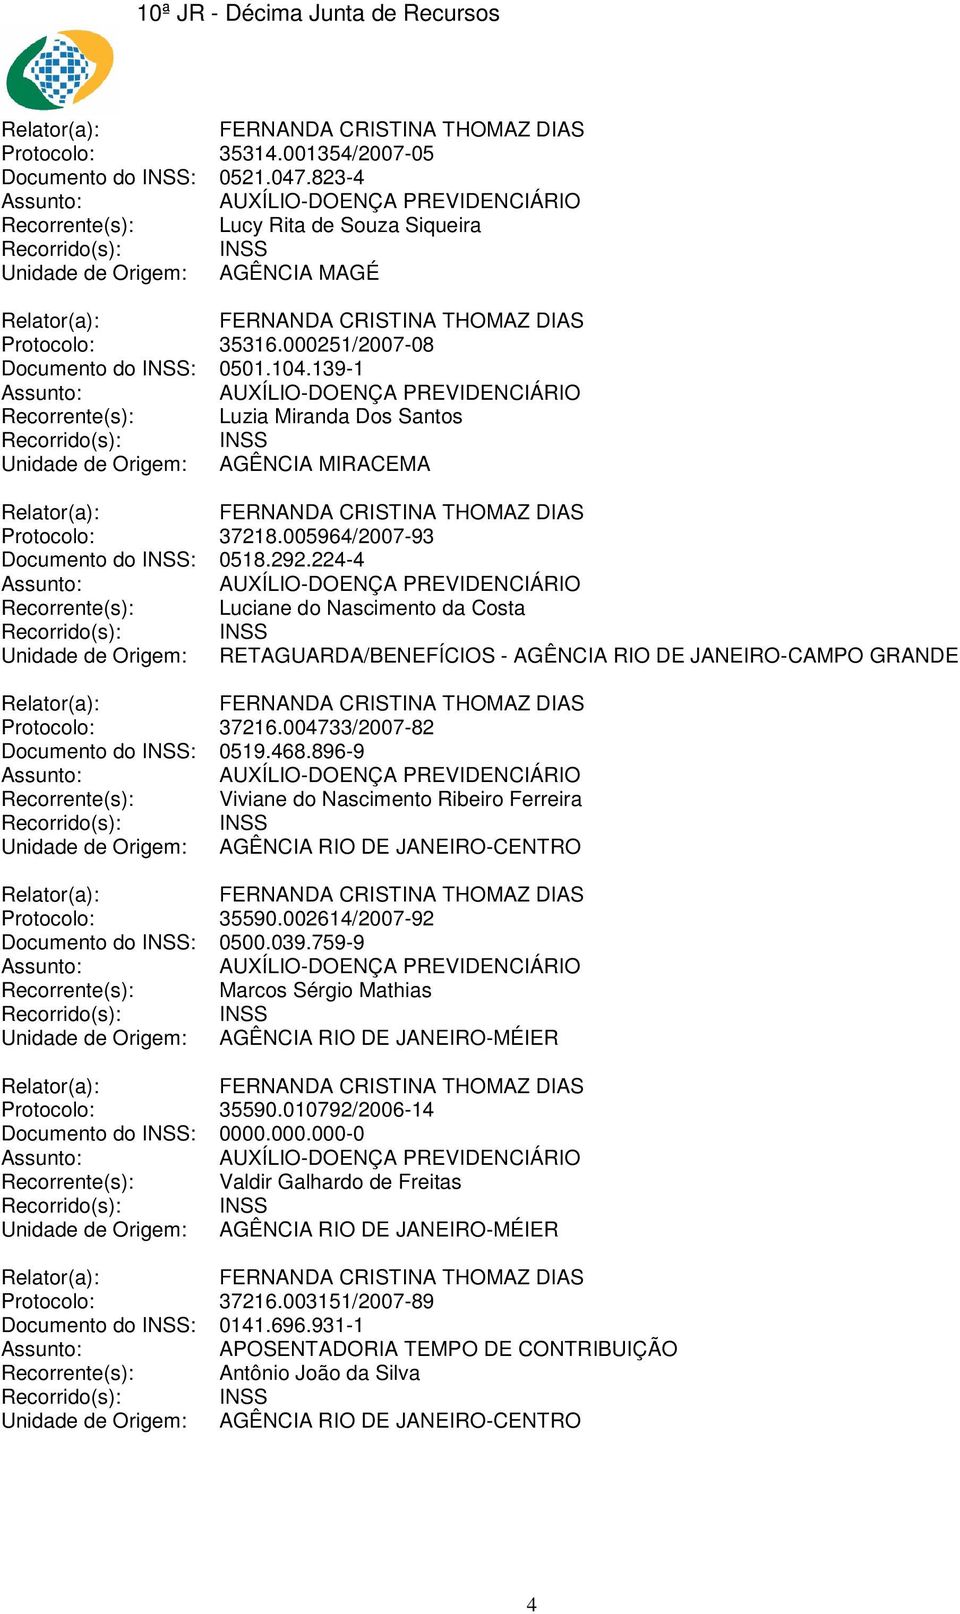 224-4 Recorrente(s): Luciane do Nascimento da Costa Unidade de Origem: RETAGUARDA/BENEFÍCIOS - AGÊNCIA RIO DE JANEIRO-CAMPO GRANDE Protocolo: 37216.004733/2007-82 Documento do INSS: 0519.468.